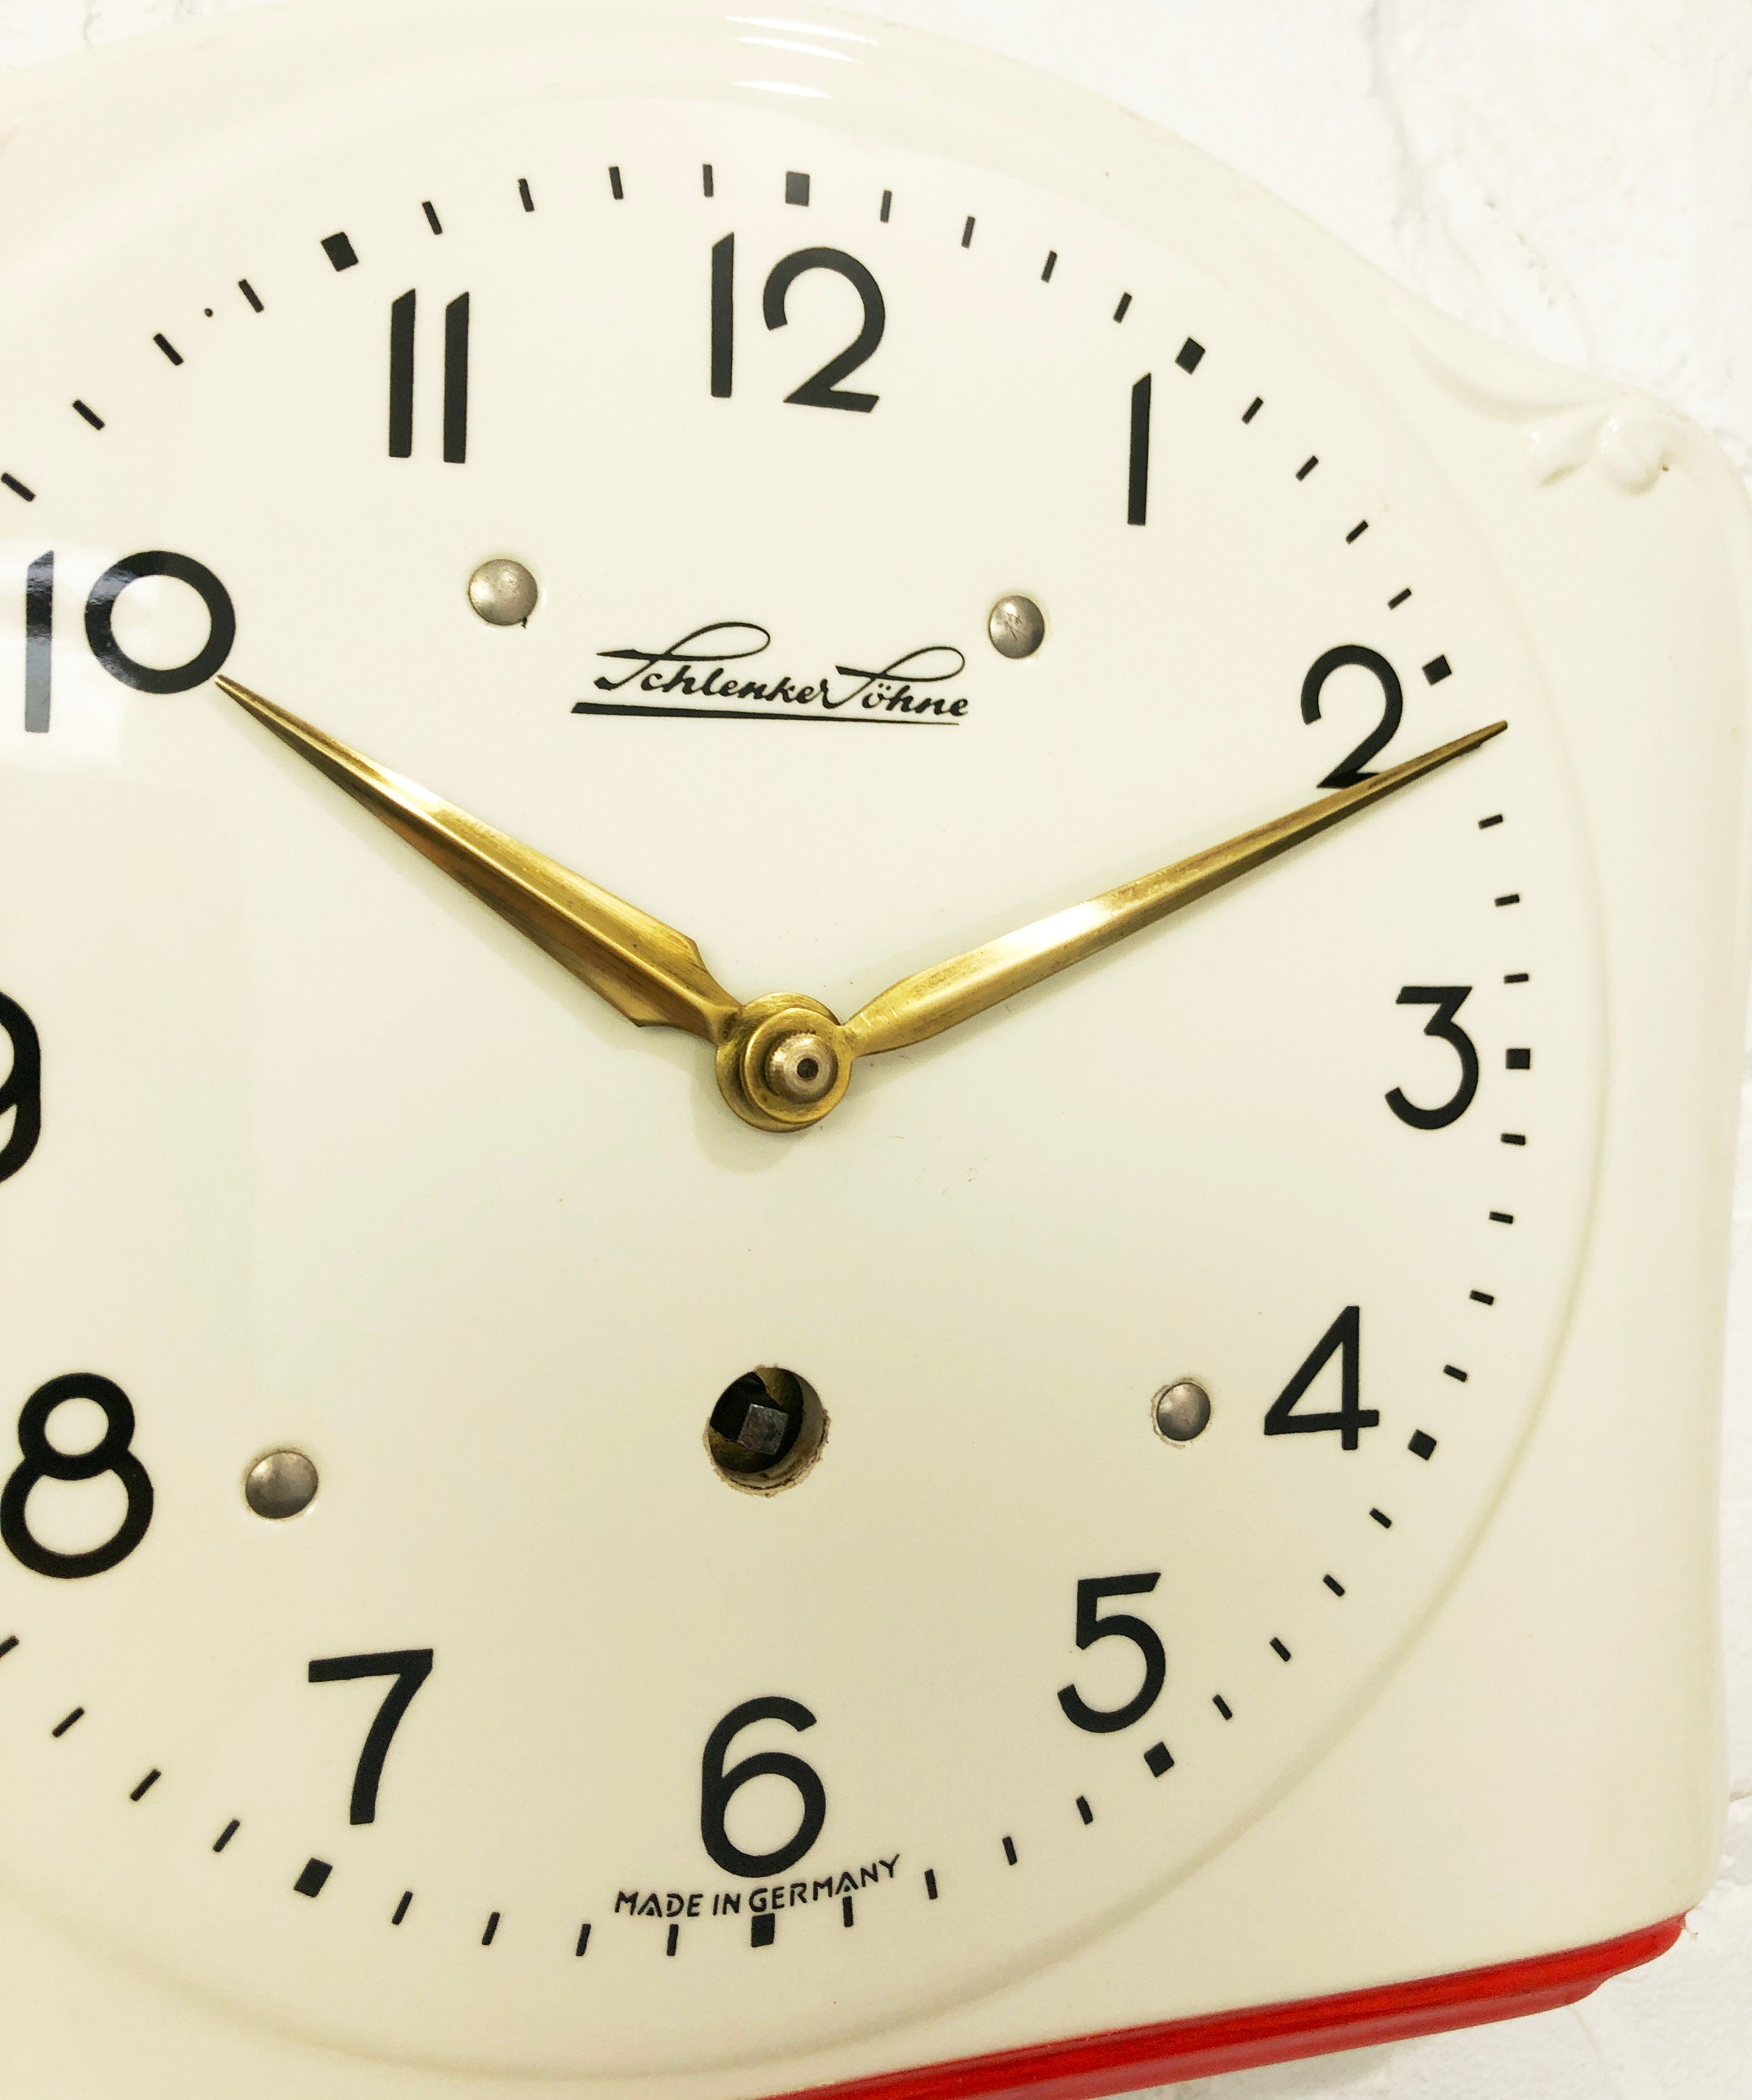 Vintage Schlenker Sohne Ceramic Kitchen Wall Clock | eXibit collection